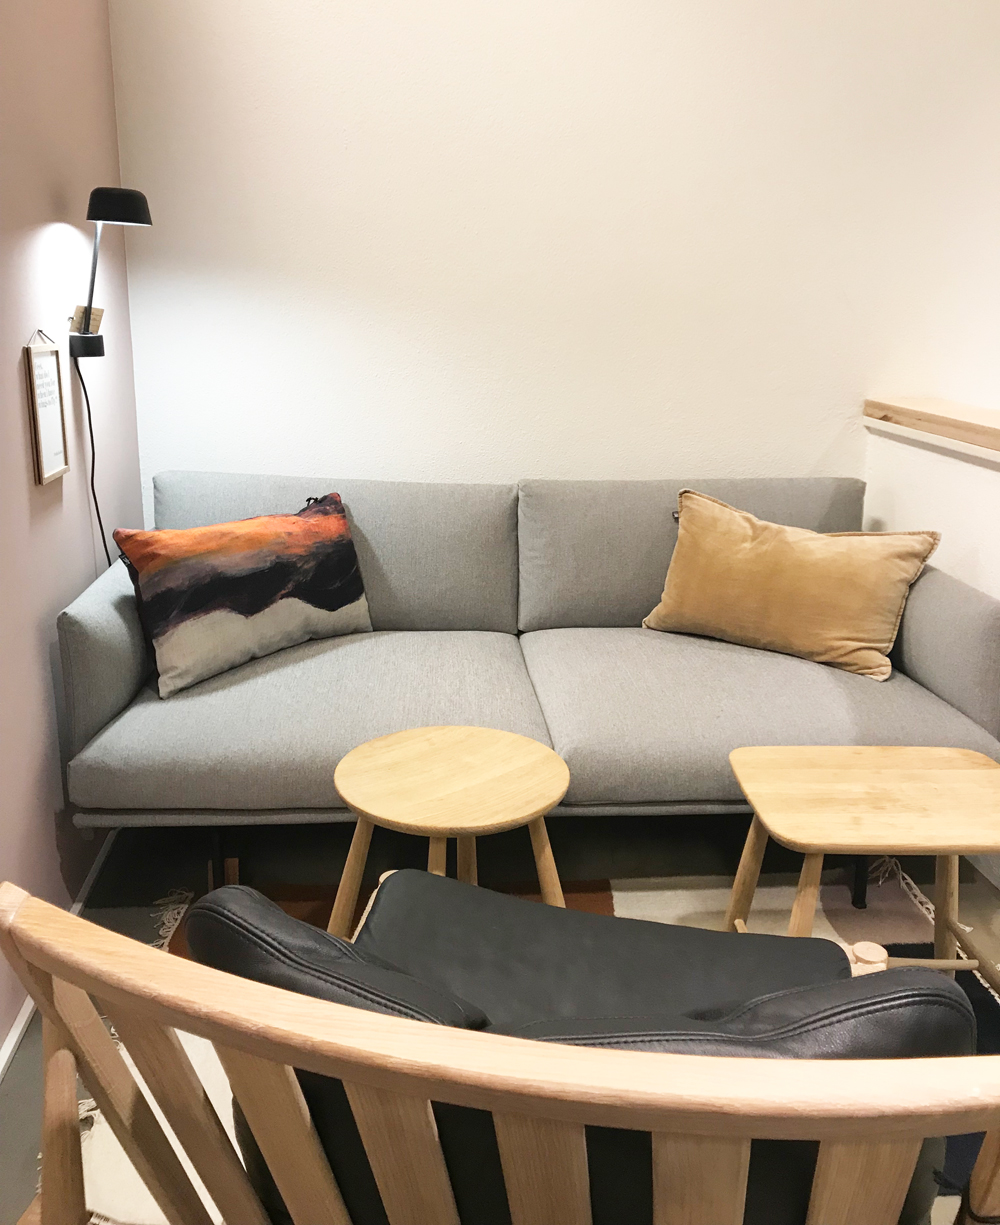 HEJKØH nennt sich das neue Lifestyle-Mekka in Basel, welches die beiden Begründerinnen Daniela Witzig und Claudine Kuhn-Köhler mit «ein bisschen Concept Store, ein bisschen Café, ein bisschen Boutique, ein bisschen Wohnzimmer und ein bisschen Atelier» umschreiben. 